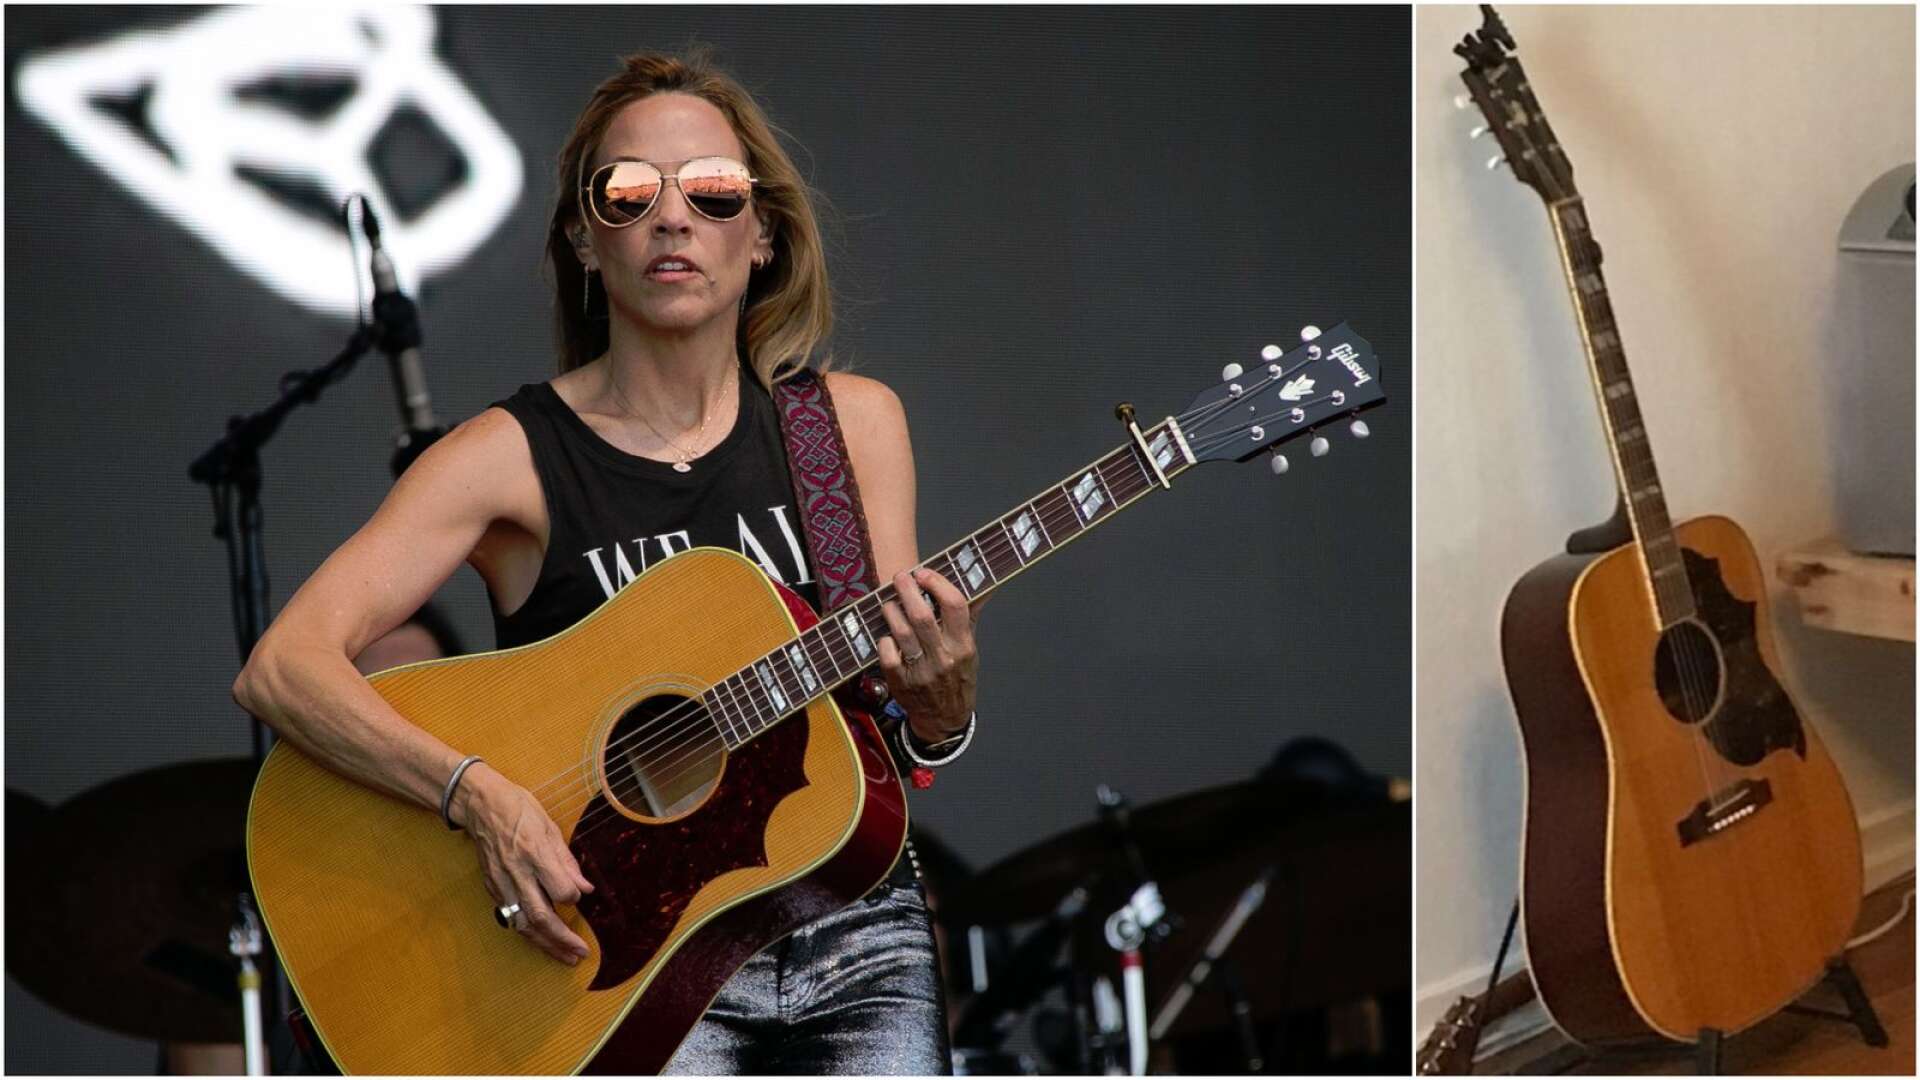 Vid inbrottet i Likenäs stals en unik Gibsongitarr signerad av Sheryl Crow. Till vänster rockstjärnan under en spelning 2019 med en gitarr av samma modell. Till höger den stulna gitarren.